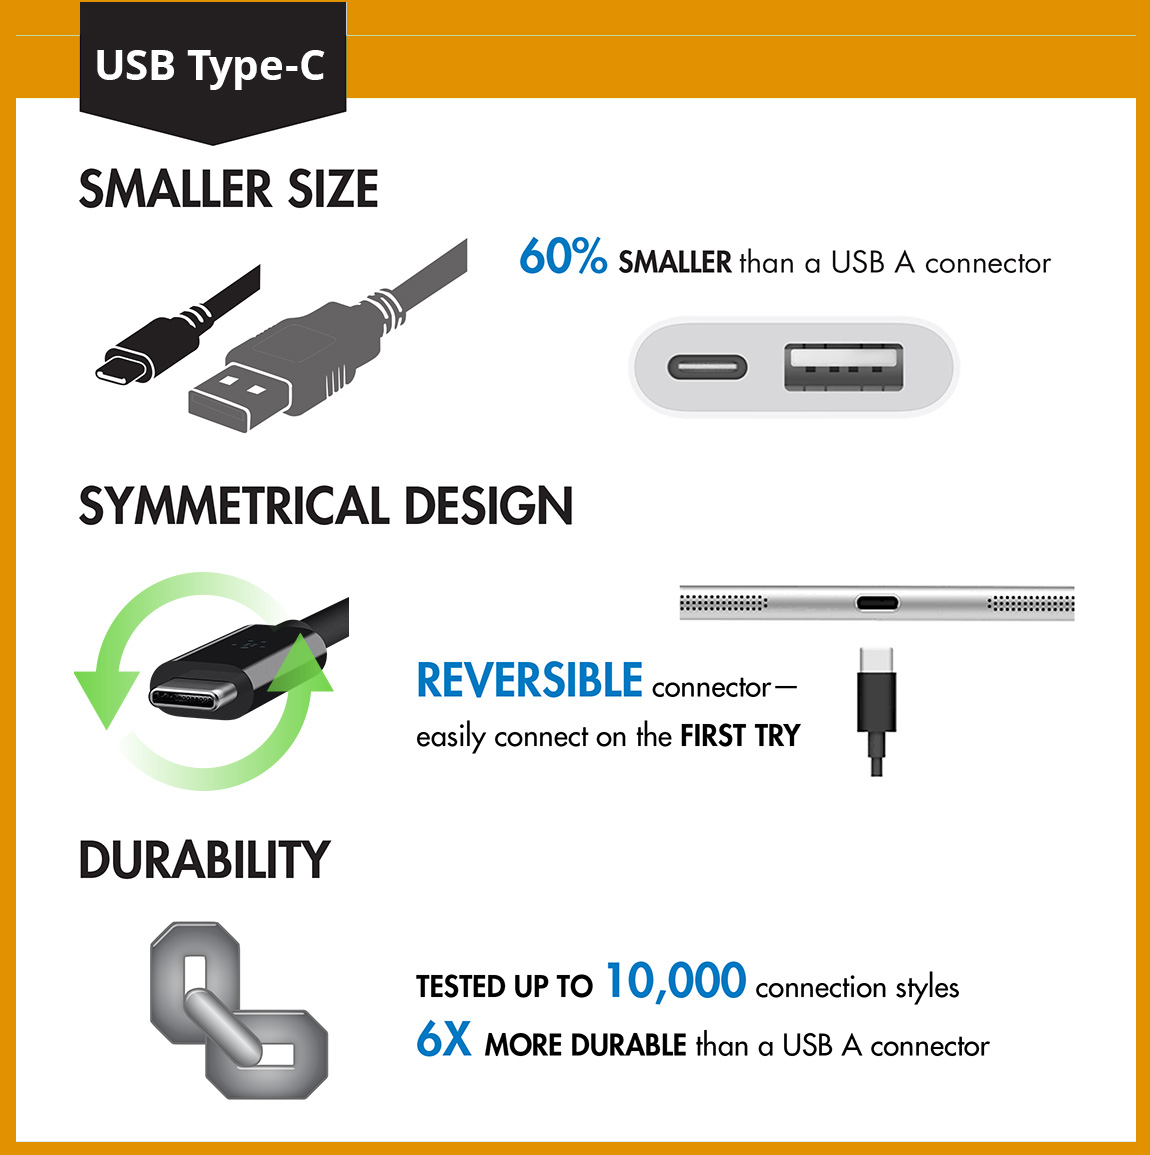 USB-Type-C